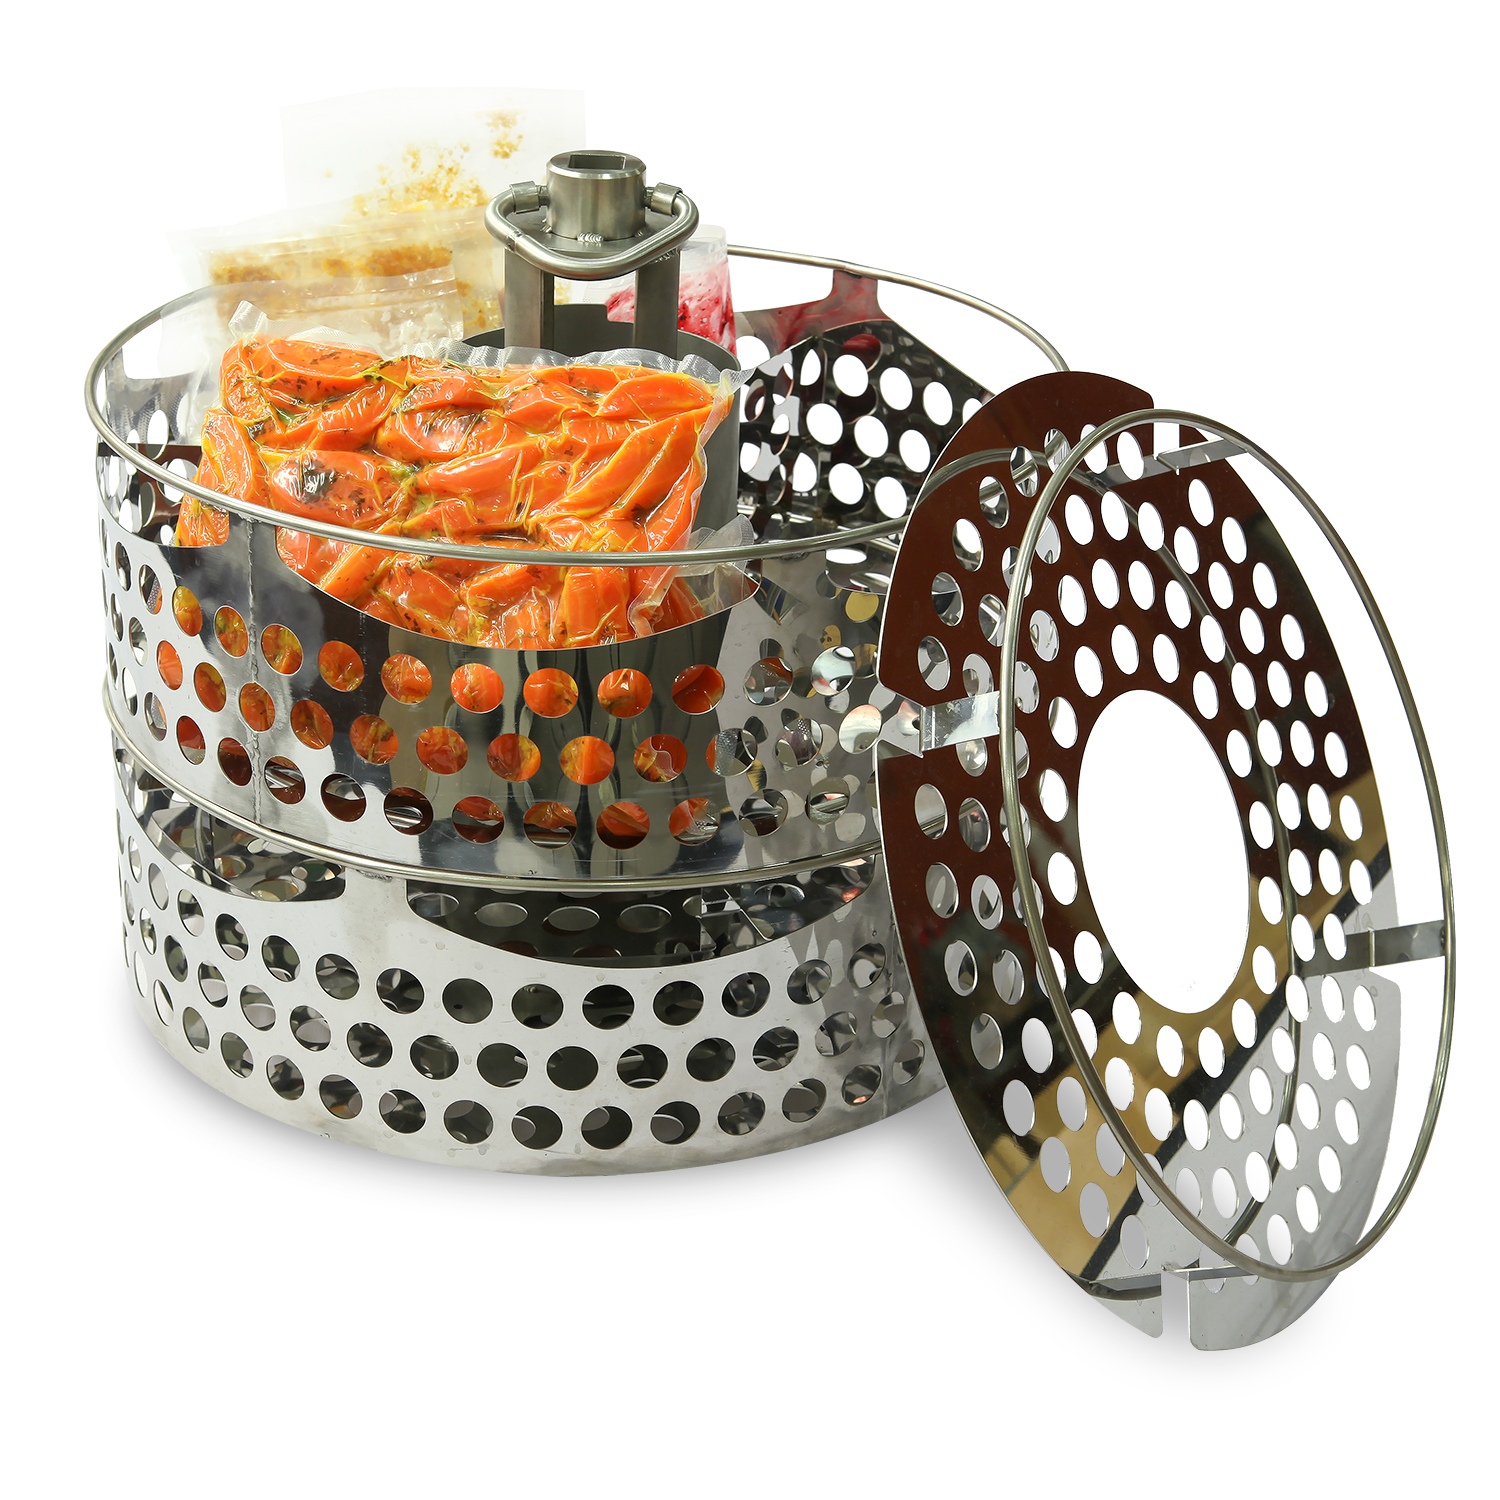 Sous-Vide baskets tool Metos Proveno/Culino/Viking 200 | Metos Professional Kitchens